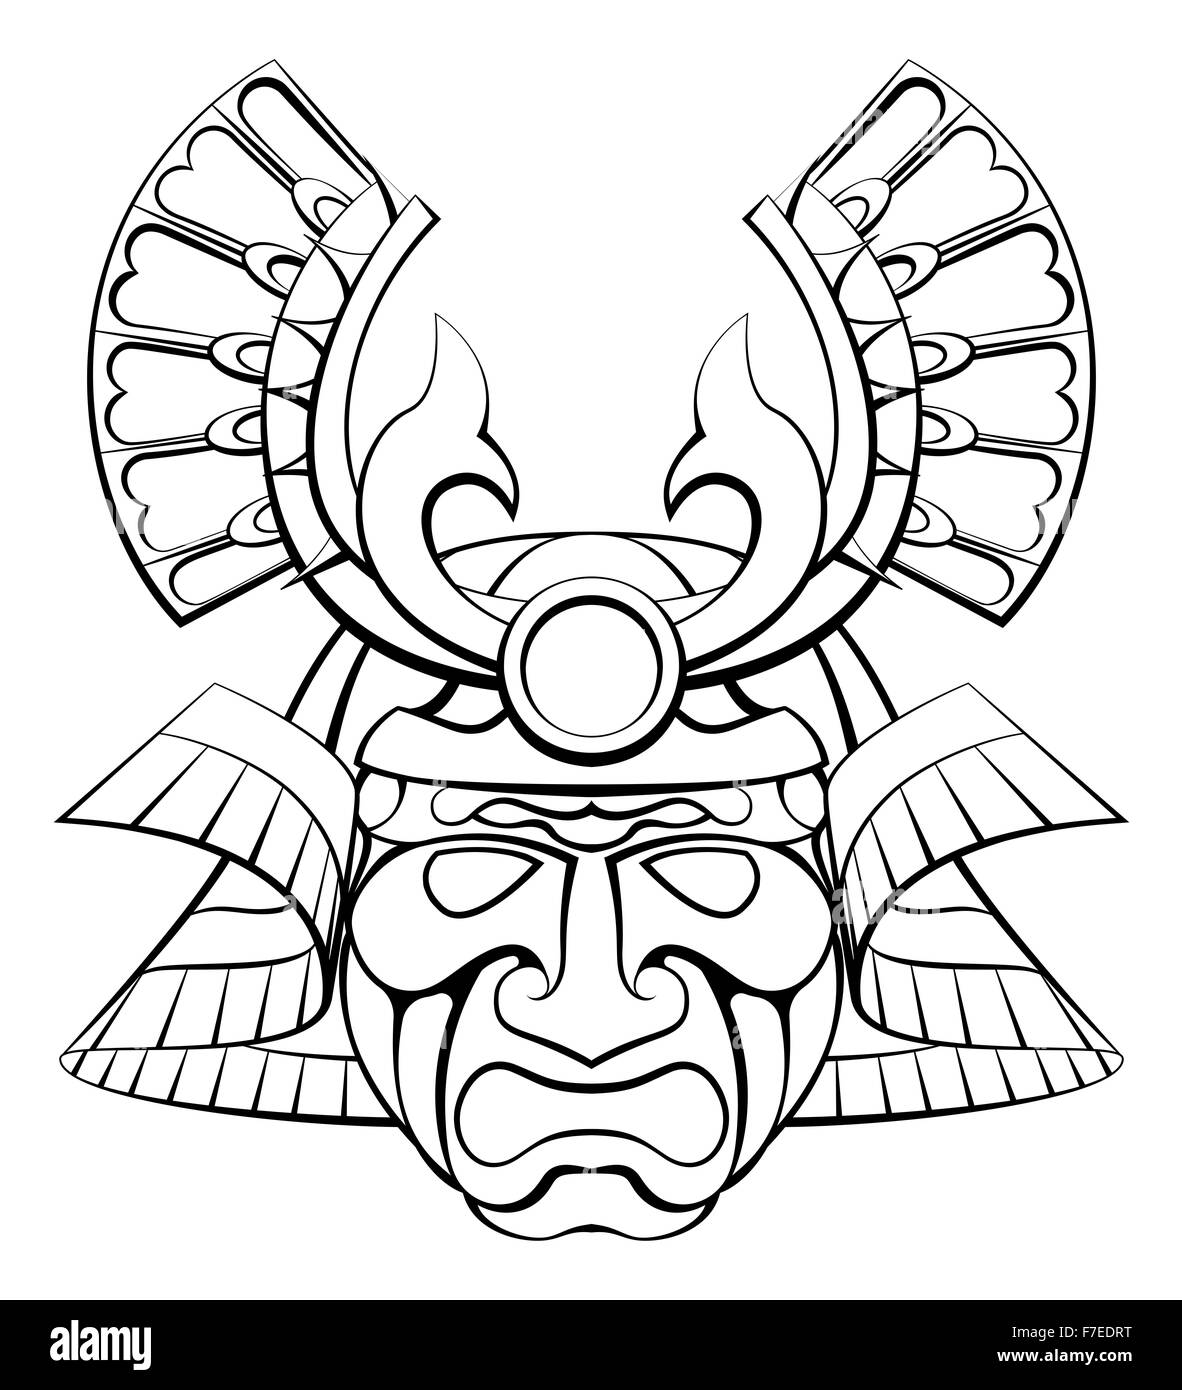 Un casque masque de samouraï illustration design Banque D'Images